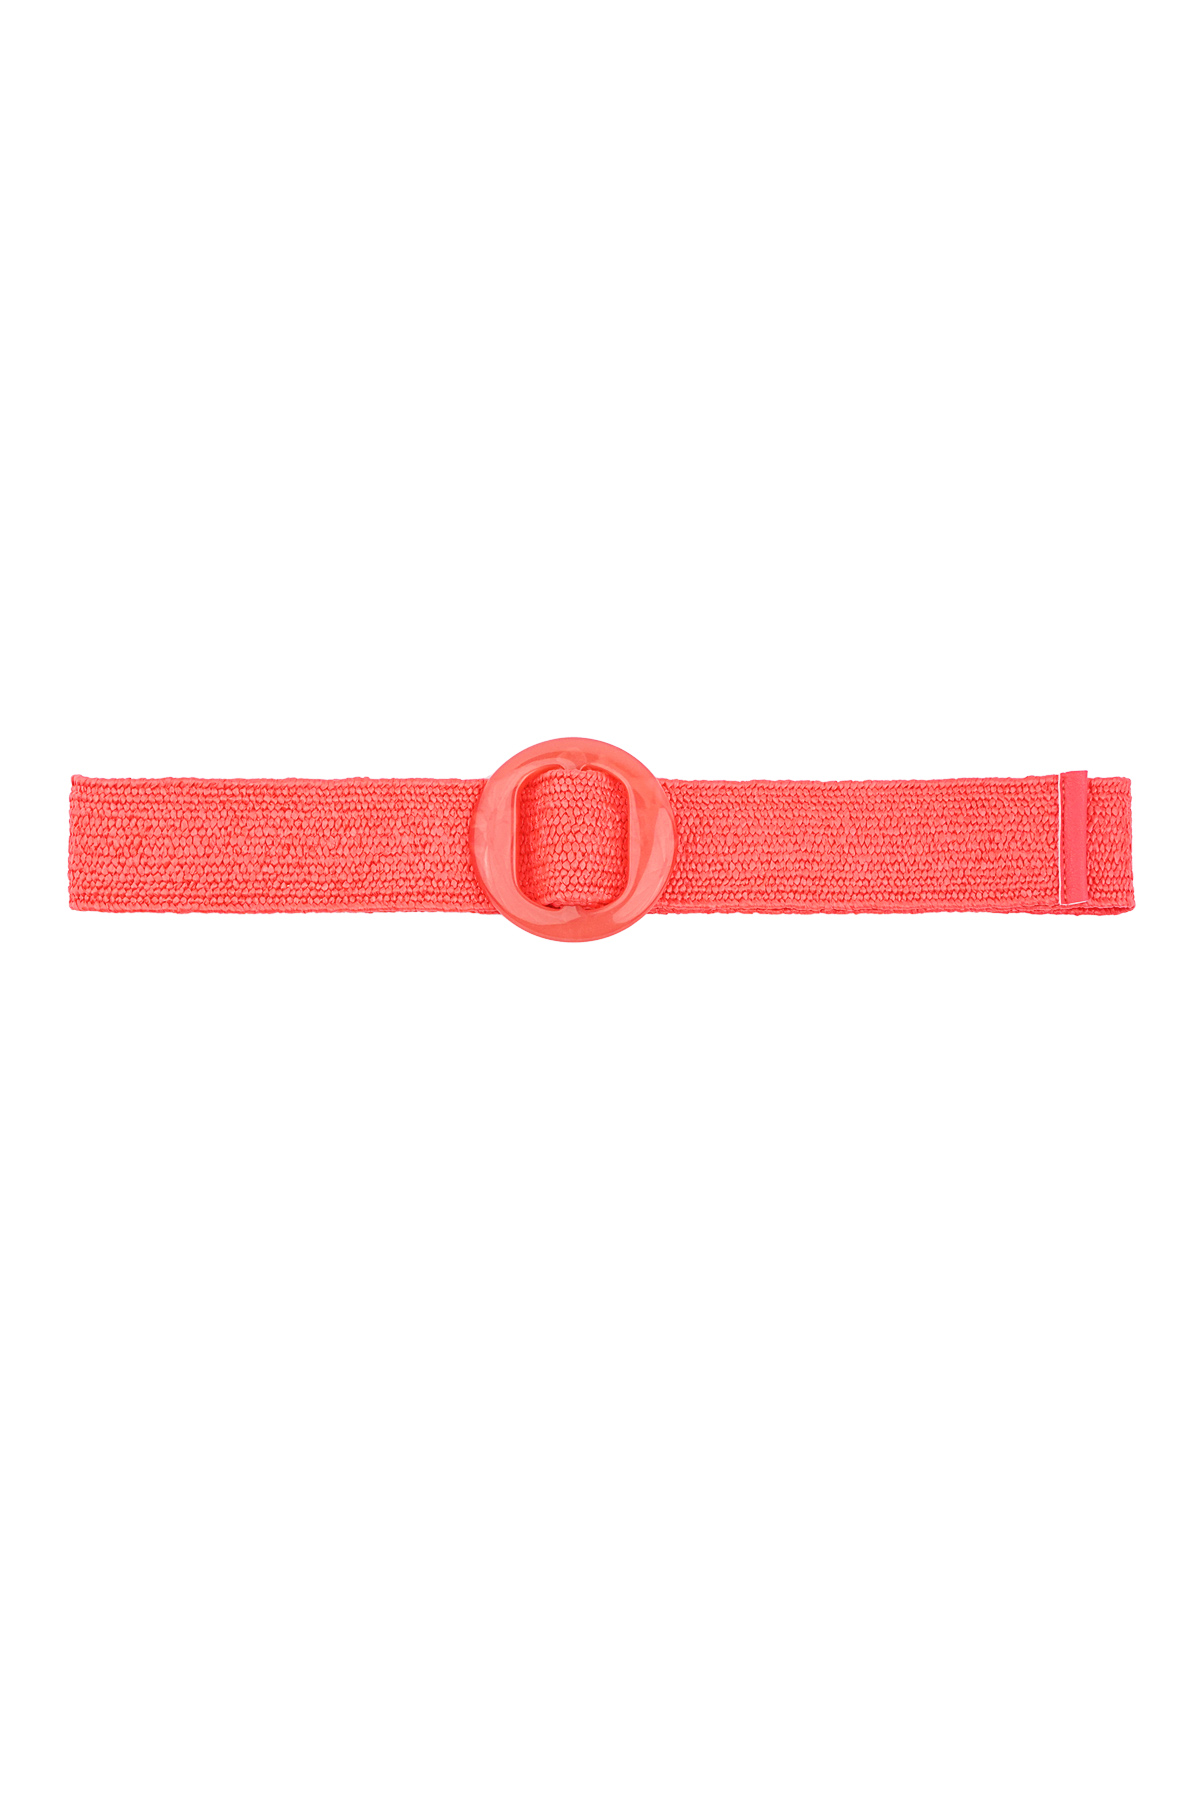 Cinturón estilo playa - rojo  h5 